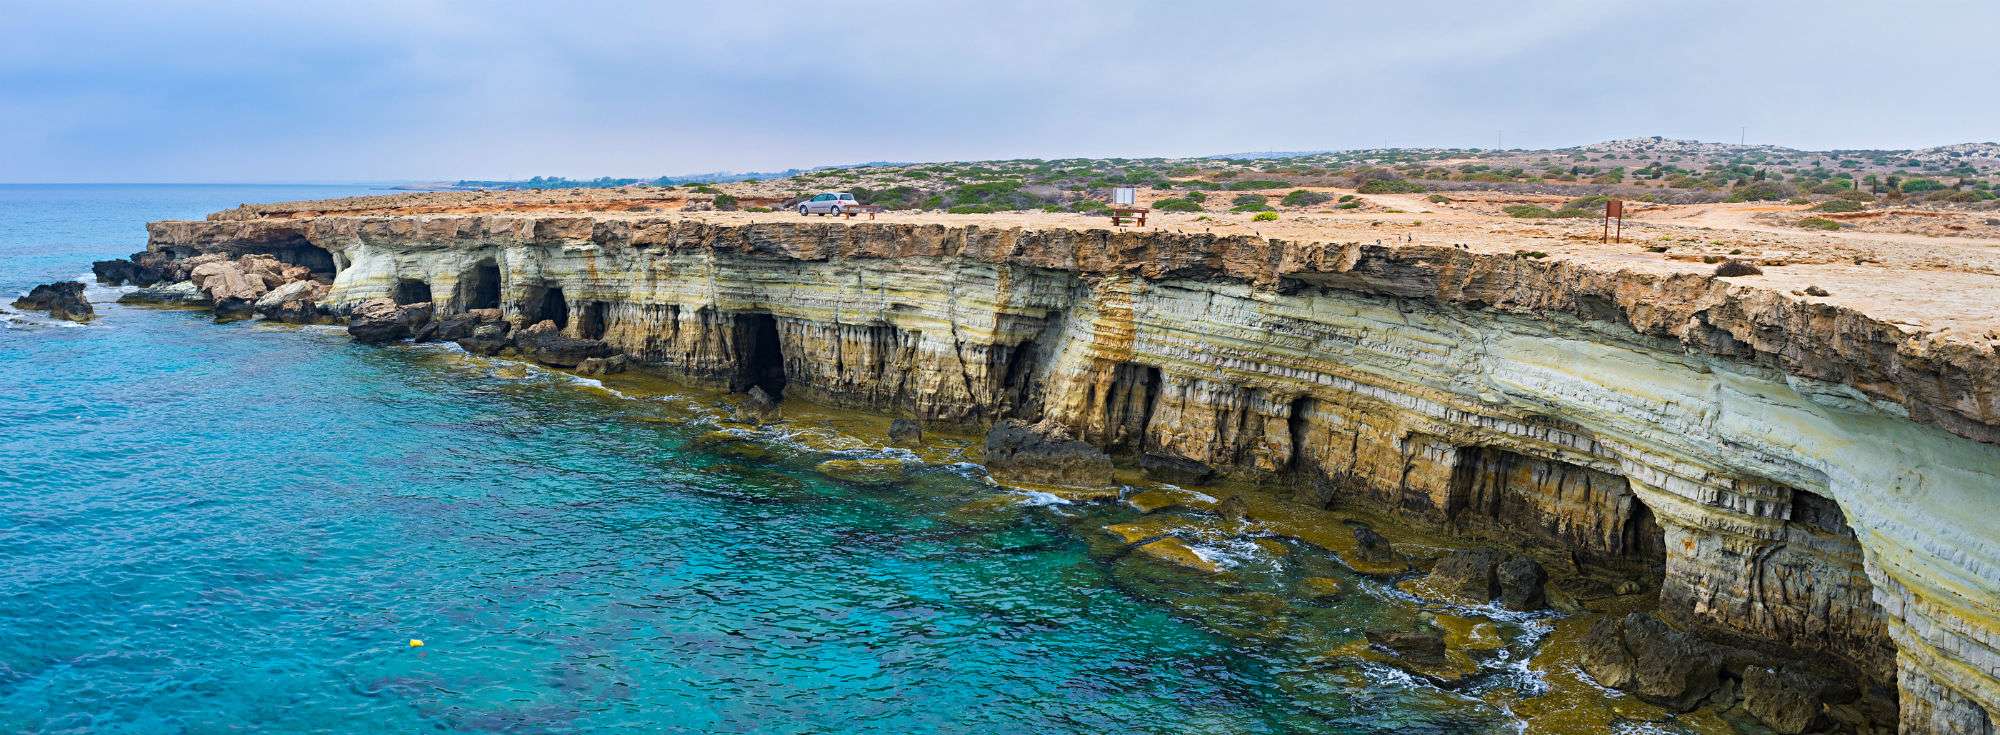 Σπηλιές & Θαλασσινές Σπηλιές στην Κύπρο